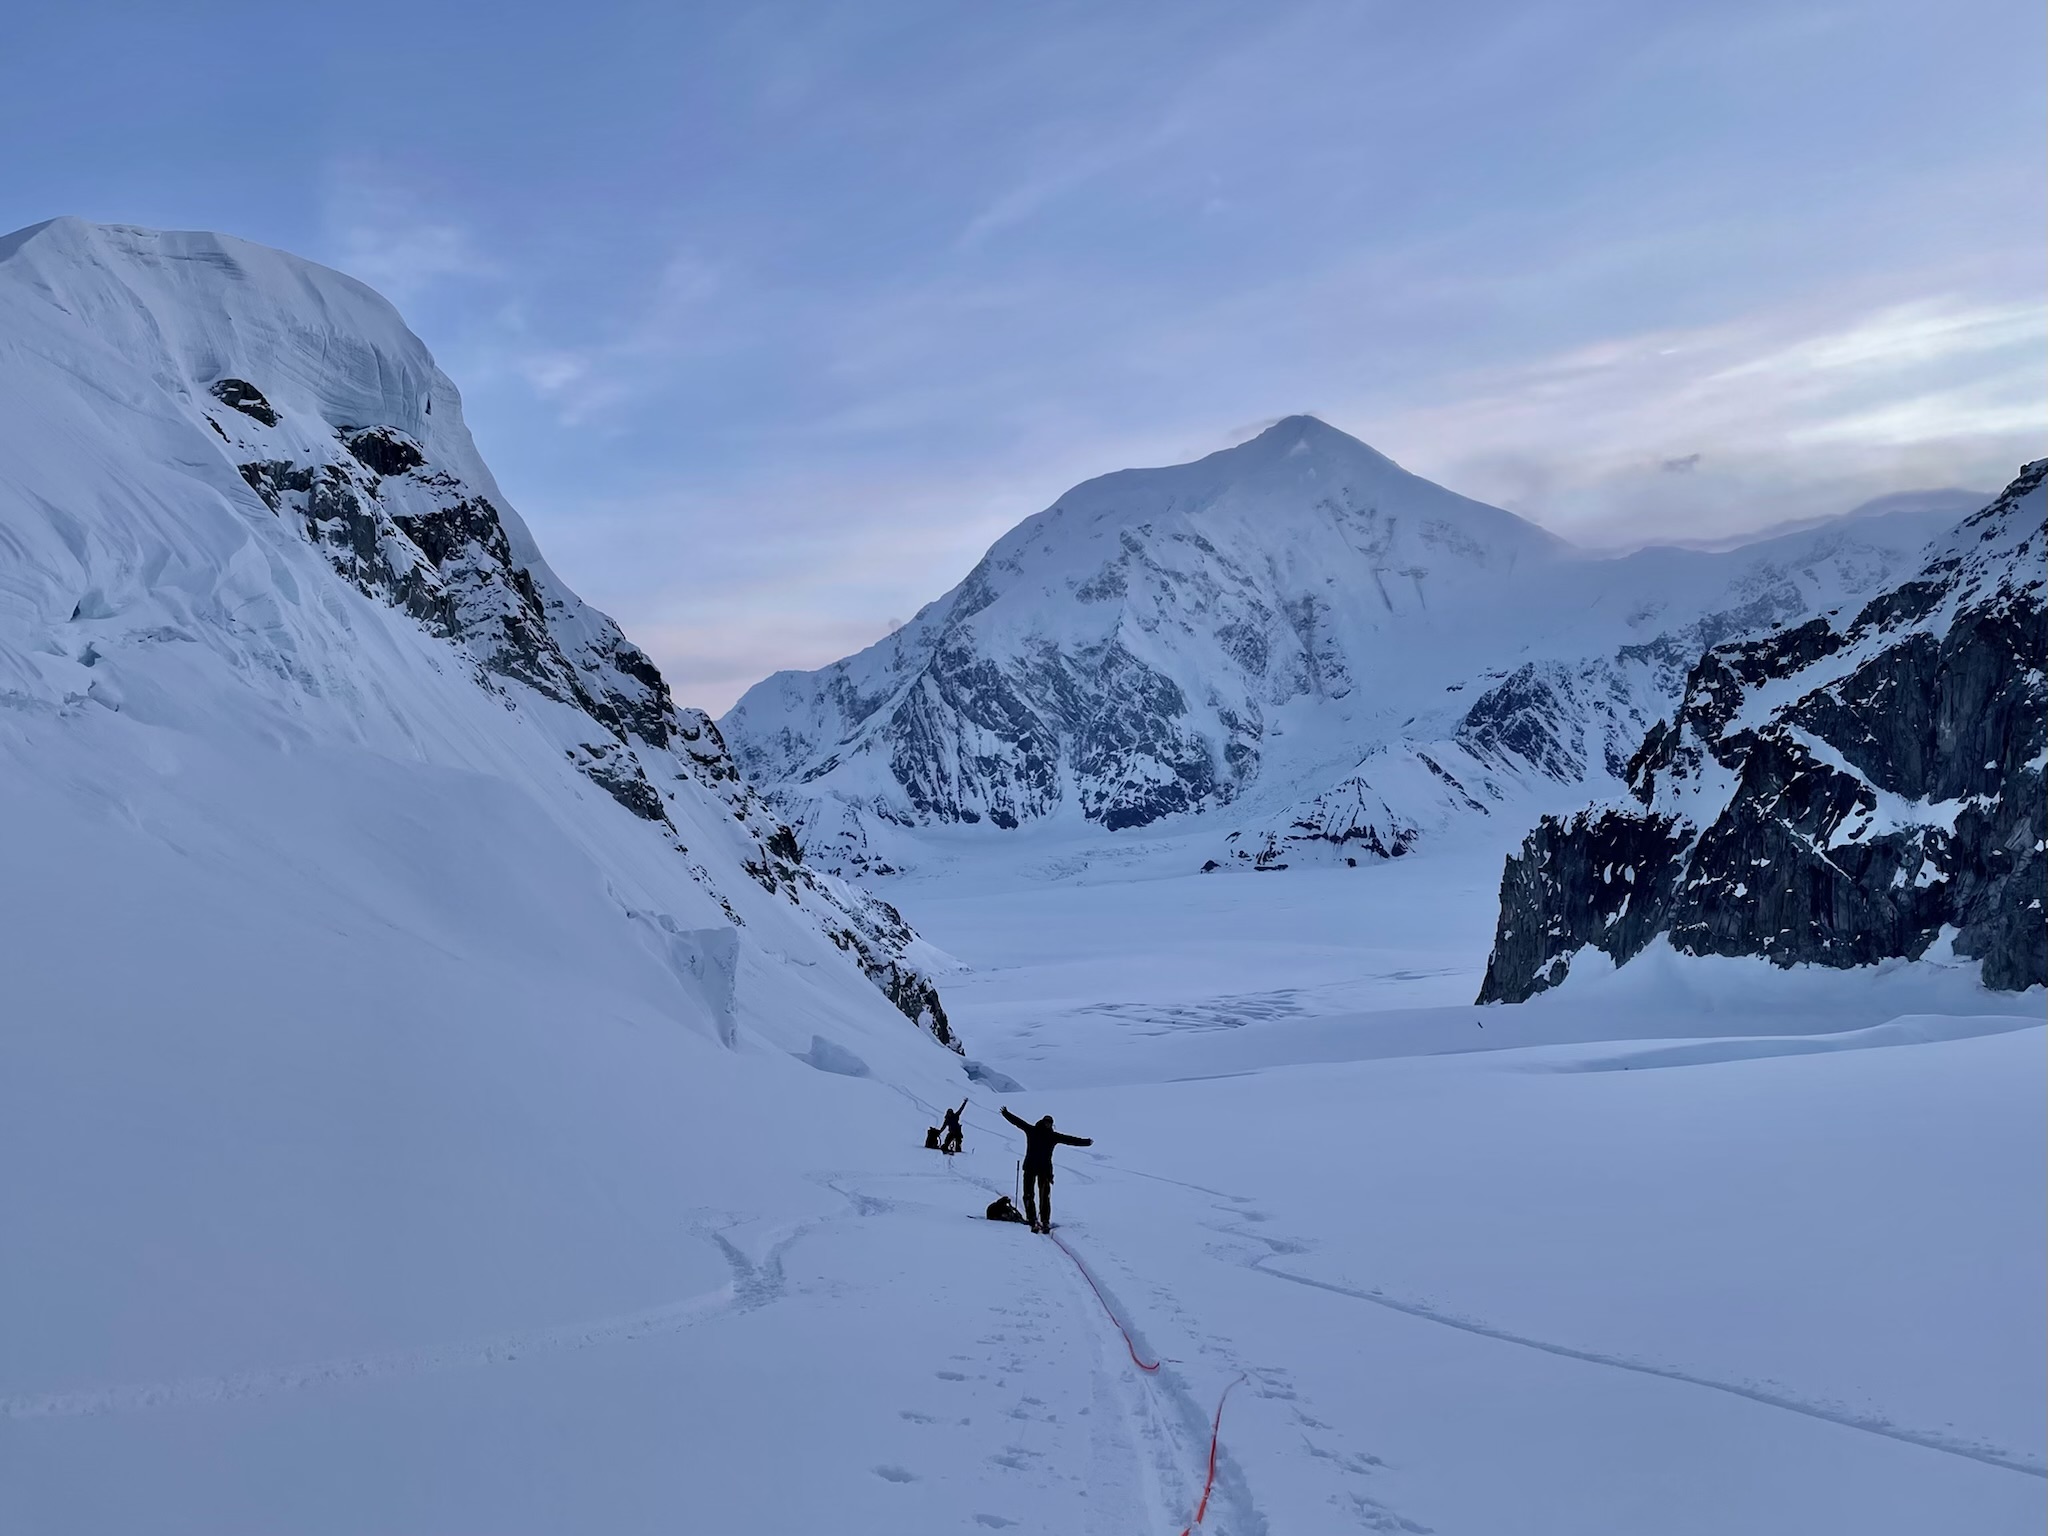 Two climbers take a stretch break en route to a snowy ridge